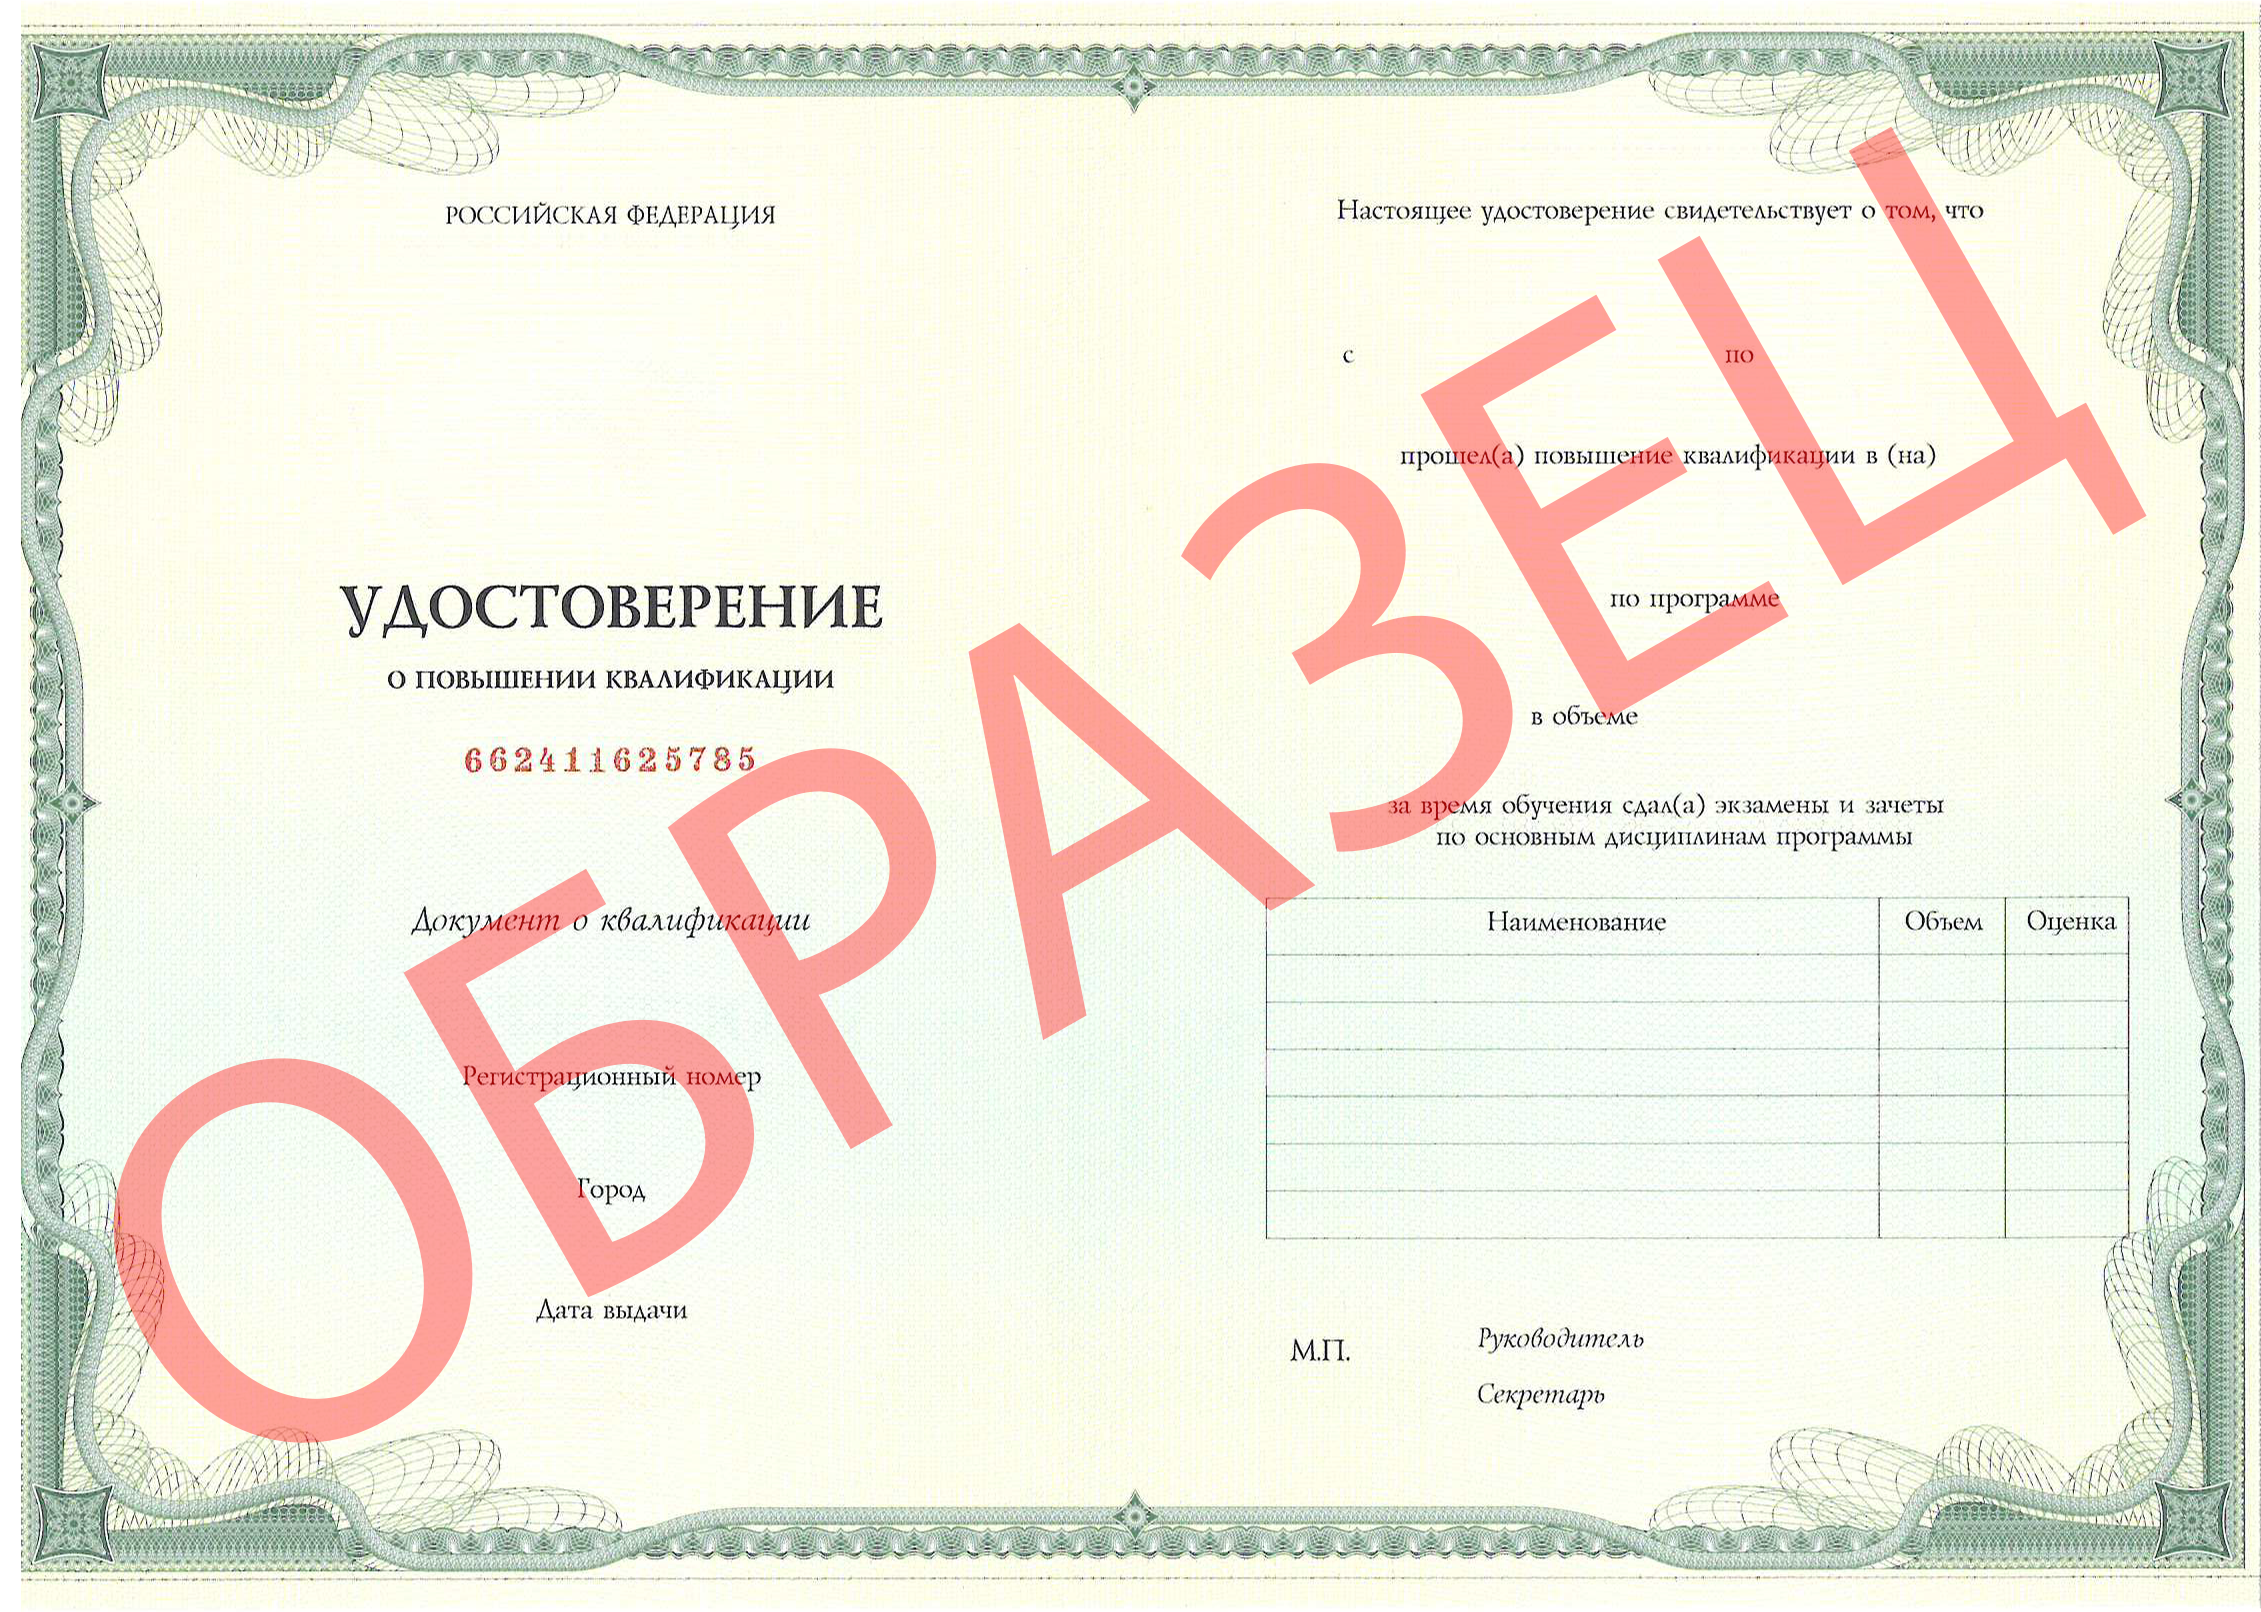 Образец документа о прохождении обучения - Паспорт аккредитации по специальности "Фтизиатрия" 0000-афт